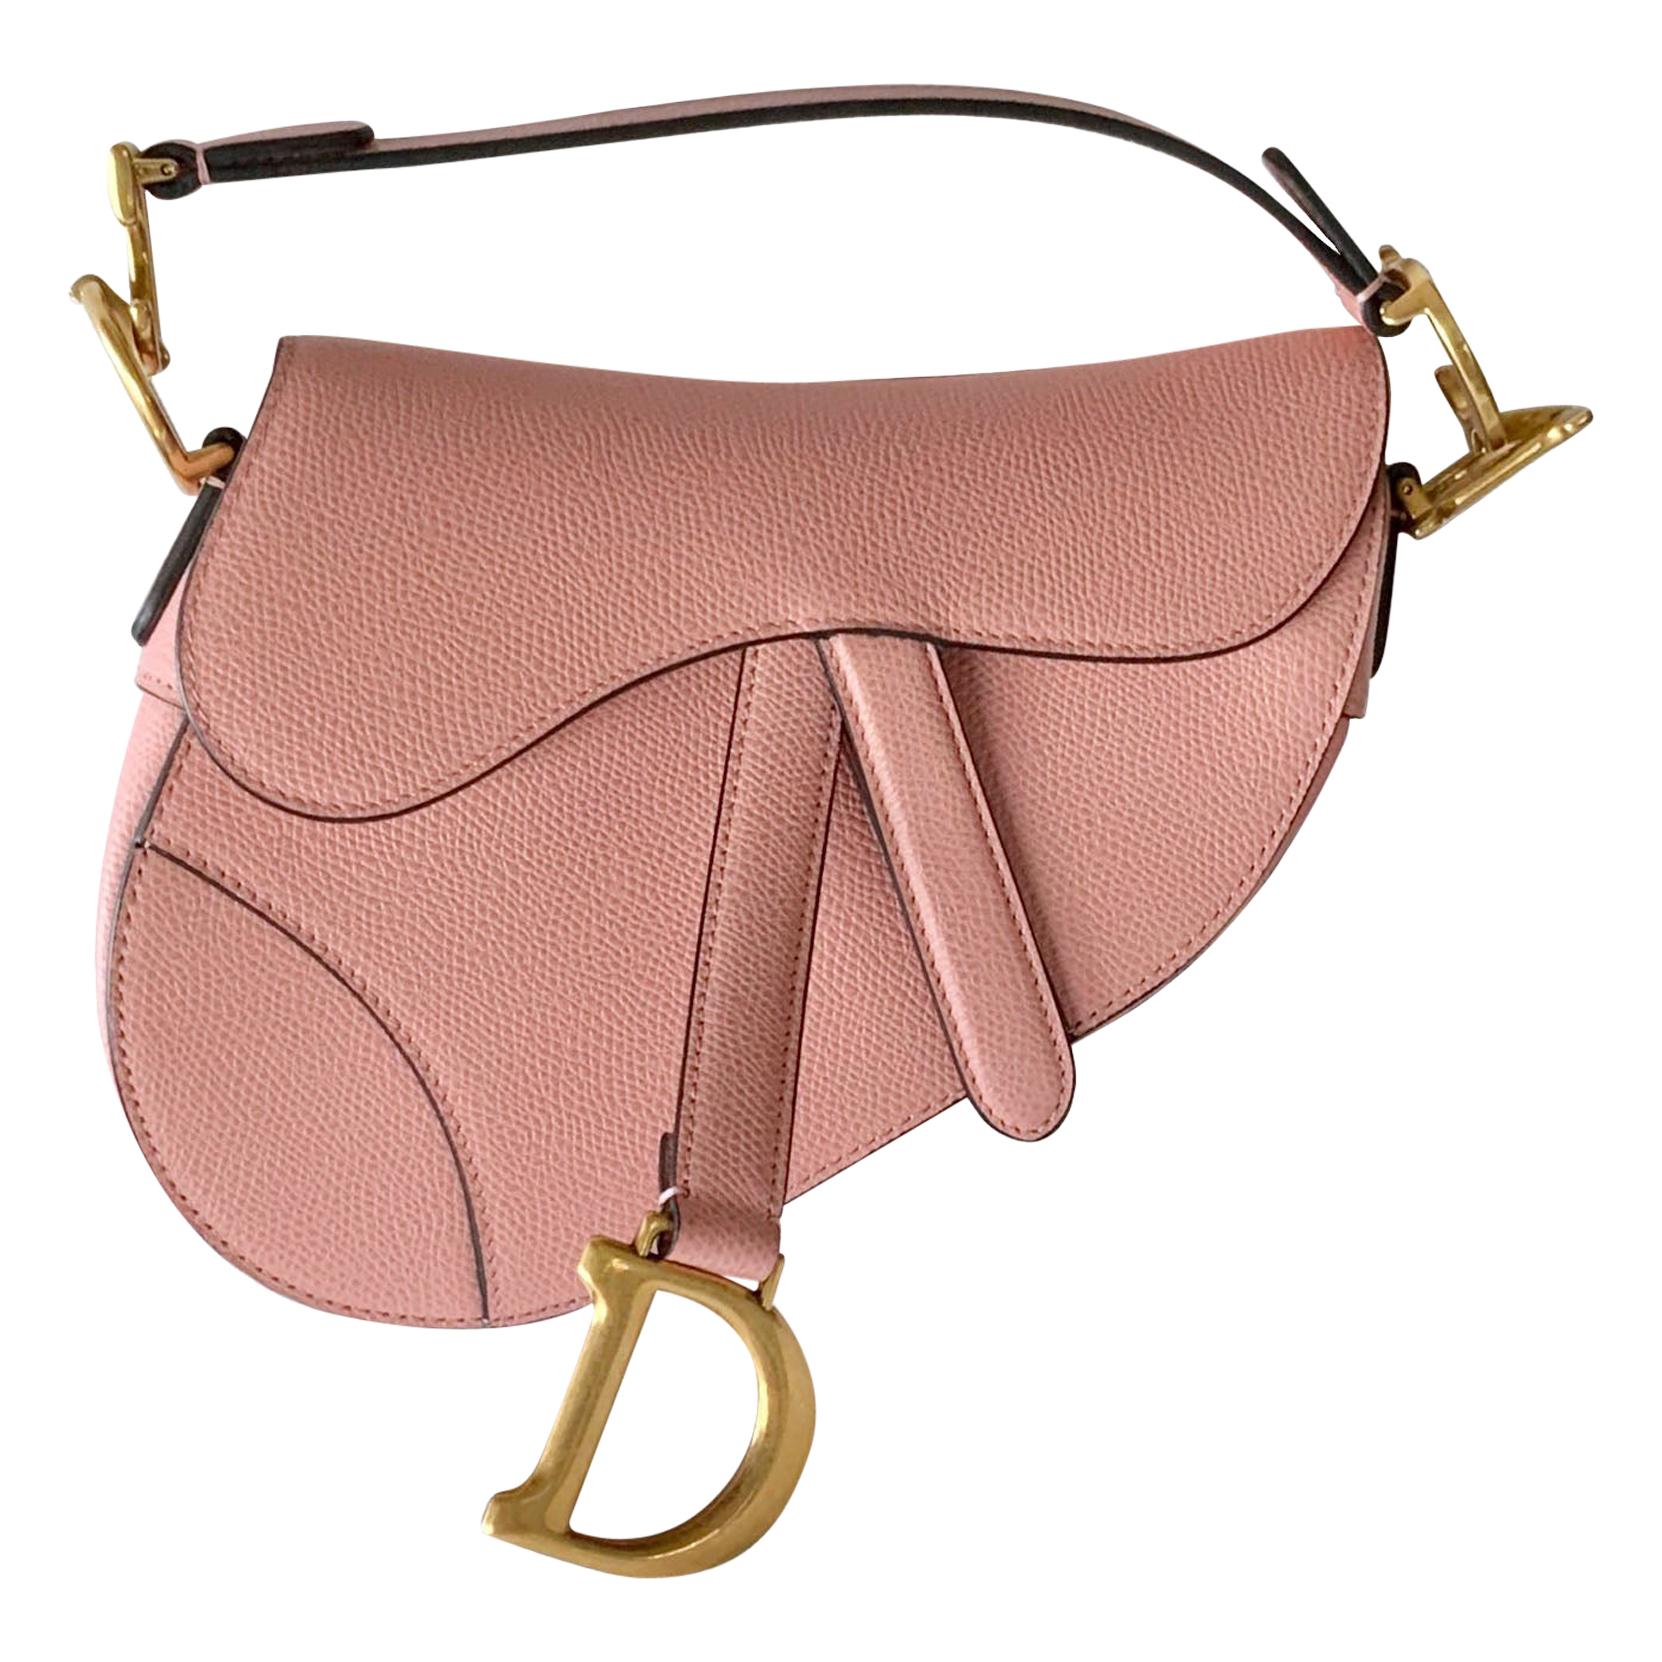 Christian Dior Saddle Bag Pink - 4 For Sale on 1stDibs  vintage dior  saddle bag pink, pink saddle bag dior, pink dior saddle bag